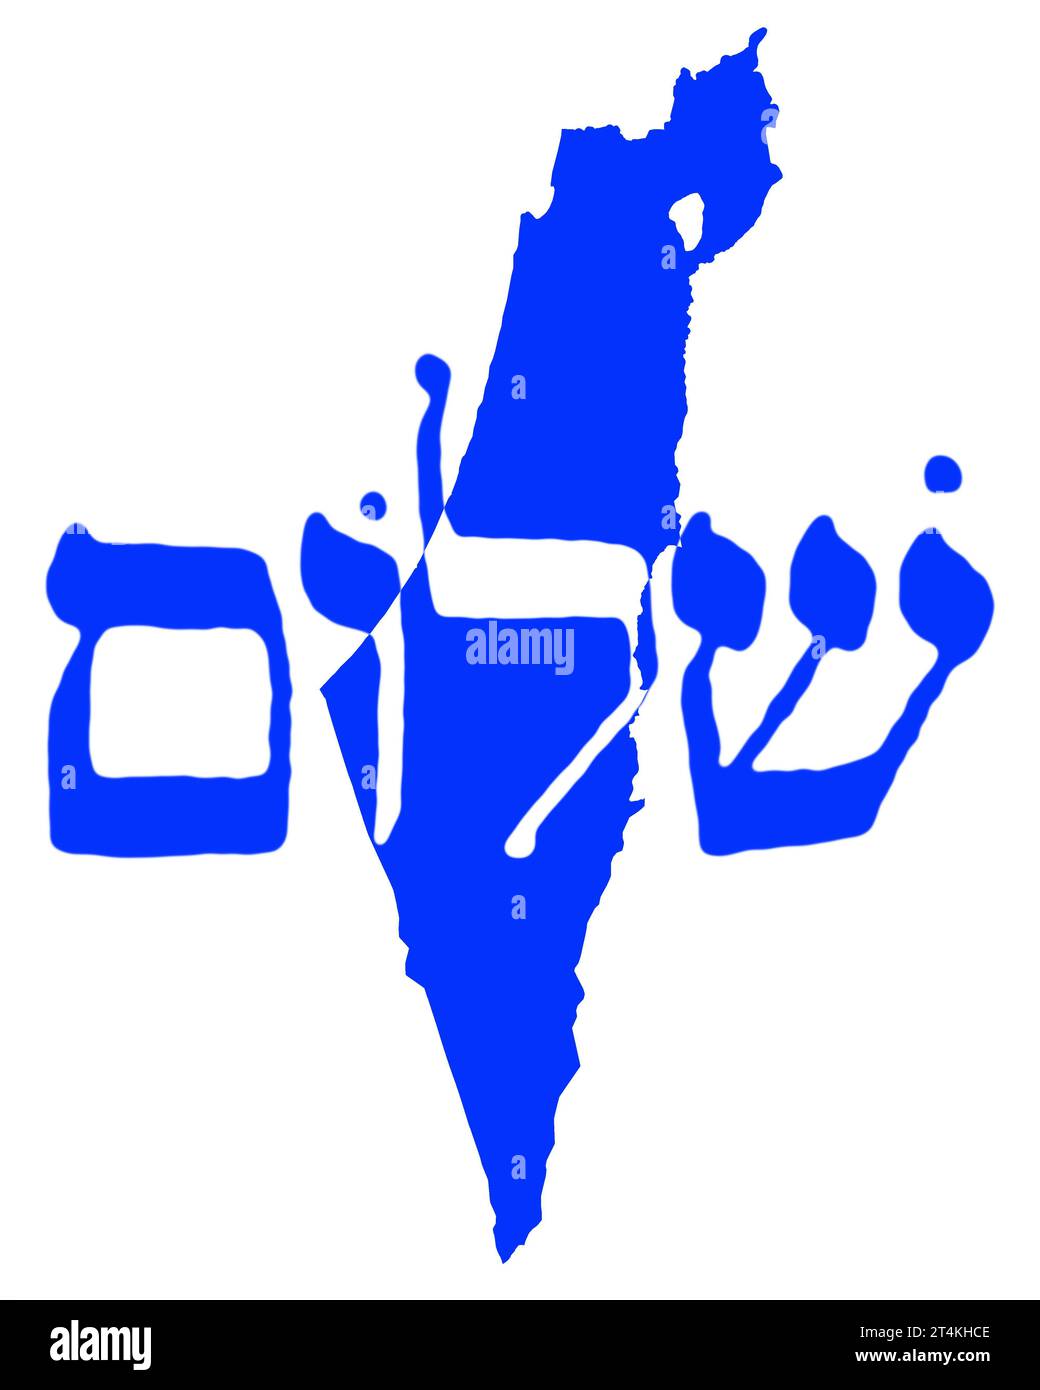 Shalom Israel - Peace Israel | Art Print